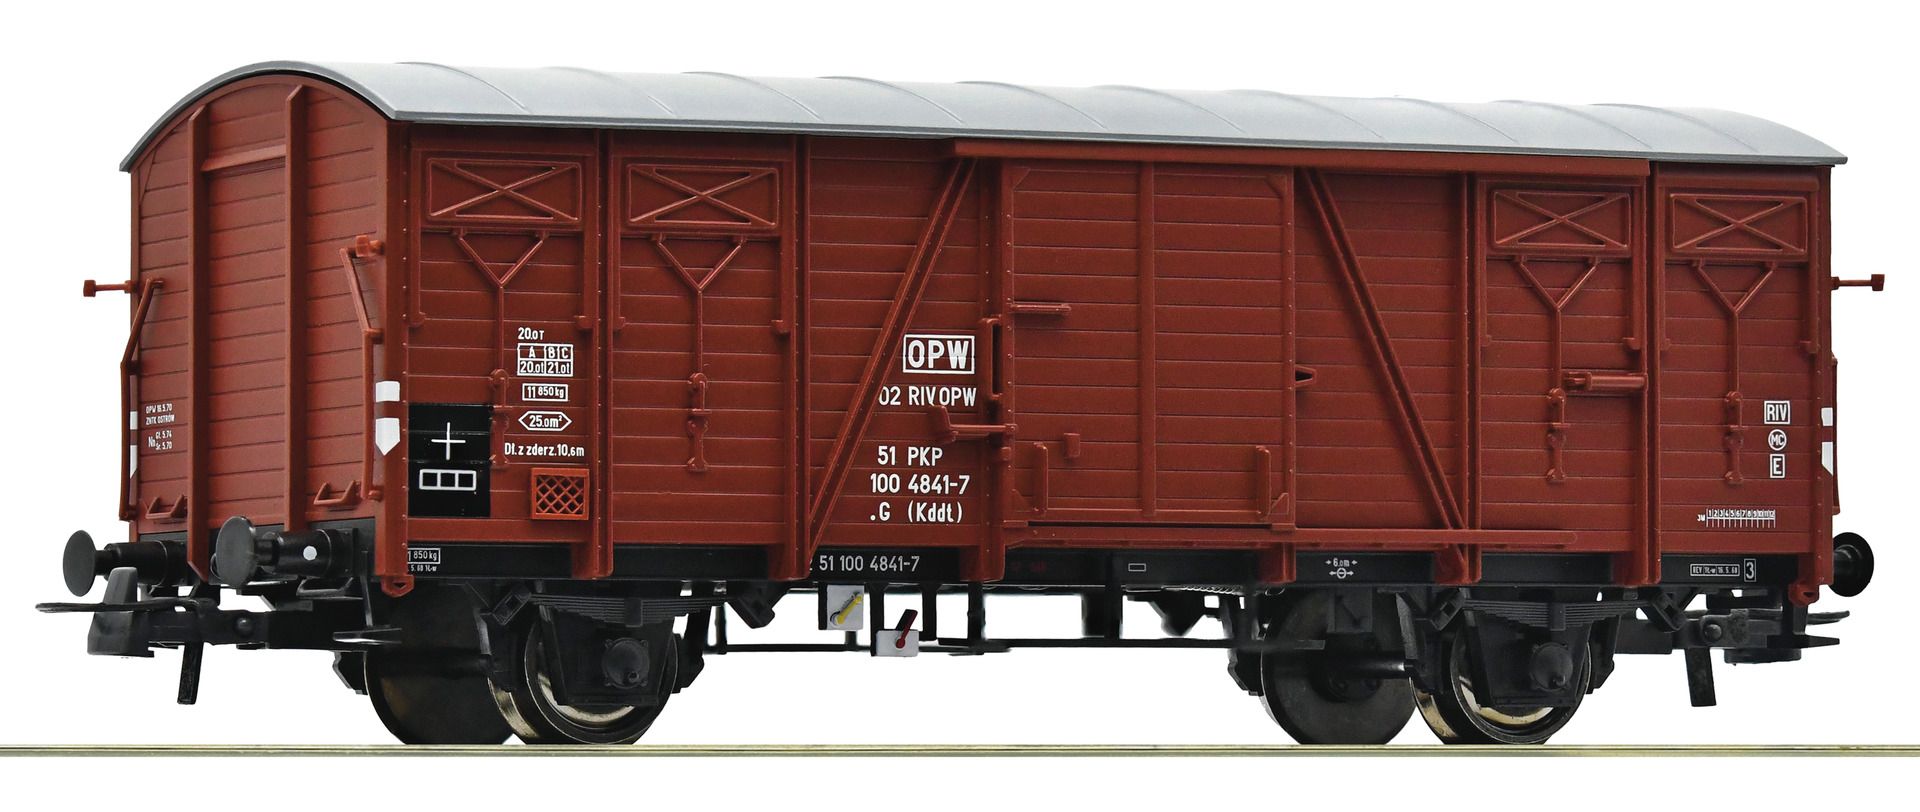 Roco 6600045 - Gedeckte Güterwagen G (Kddt), PKP, Ep.IV